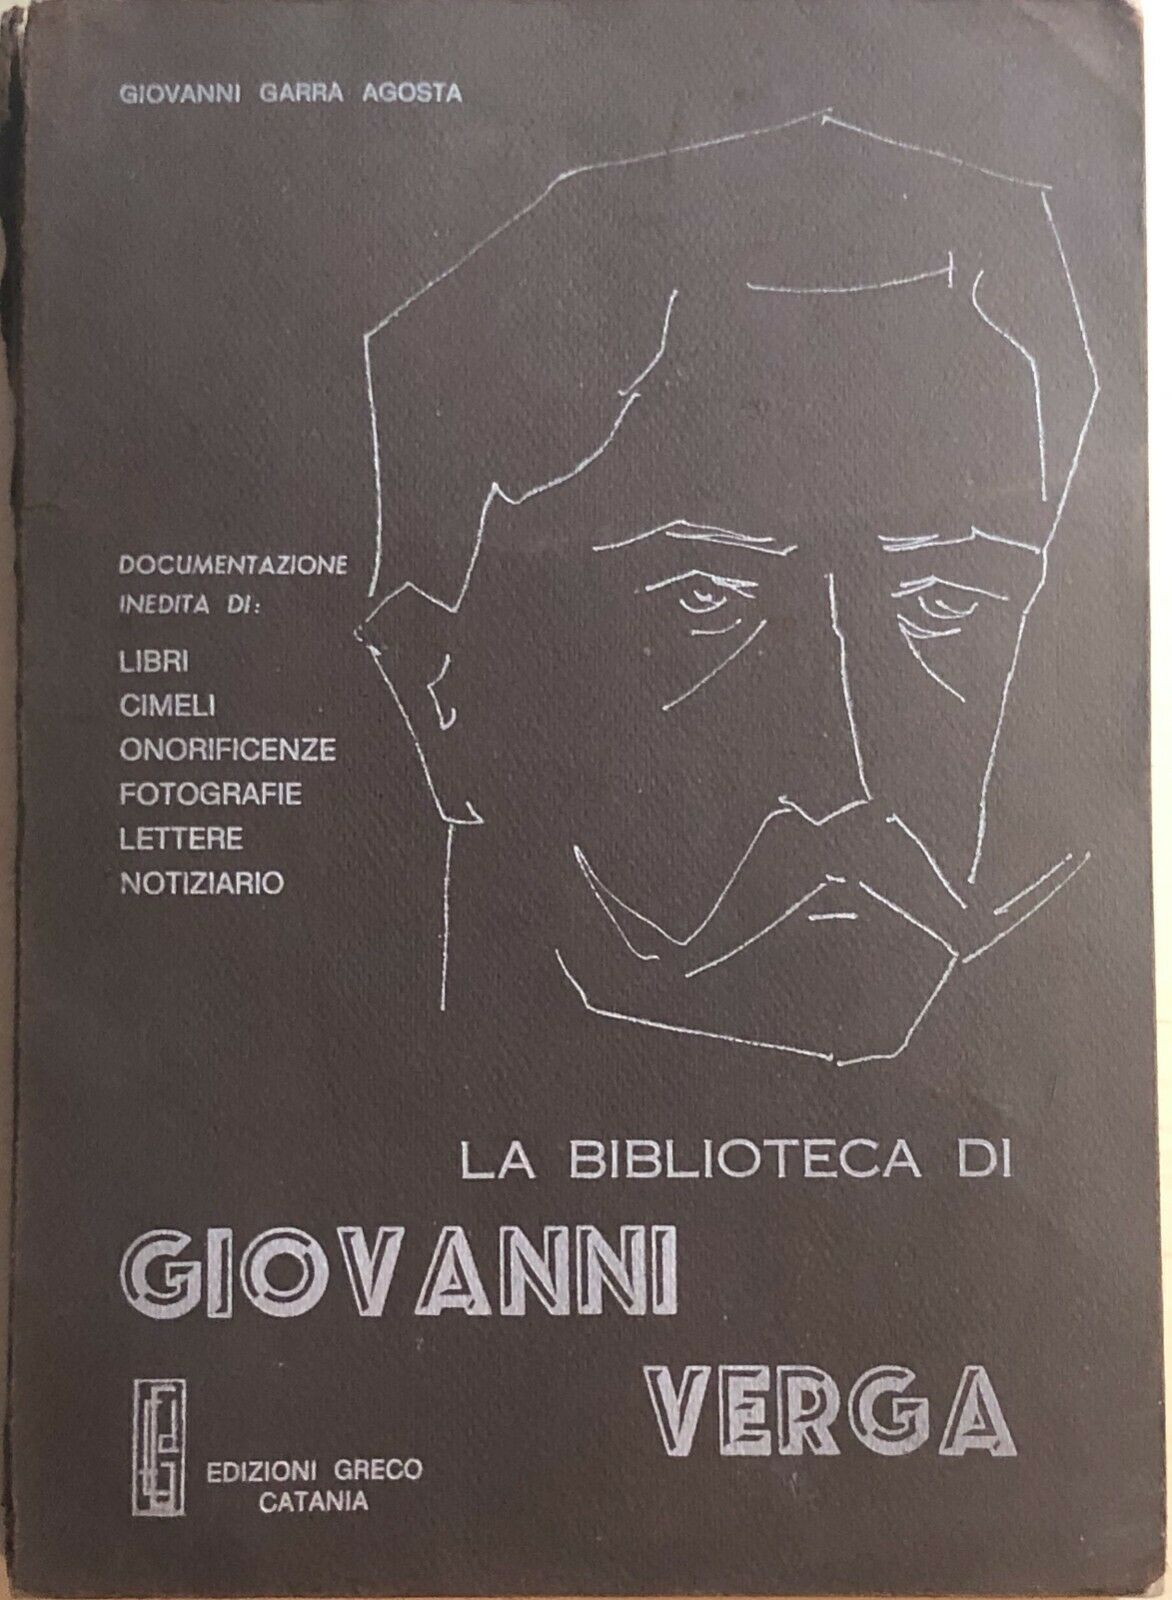 La biblioteca di Giovanni Verga di Giovanni Garra Agosta, 1977, Edizioni Greco C